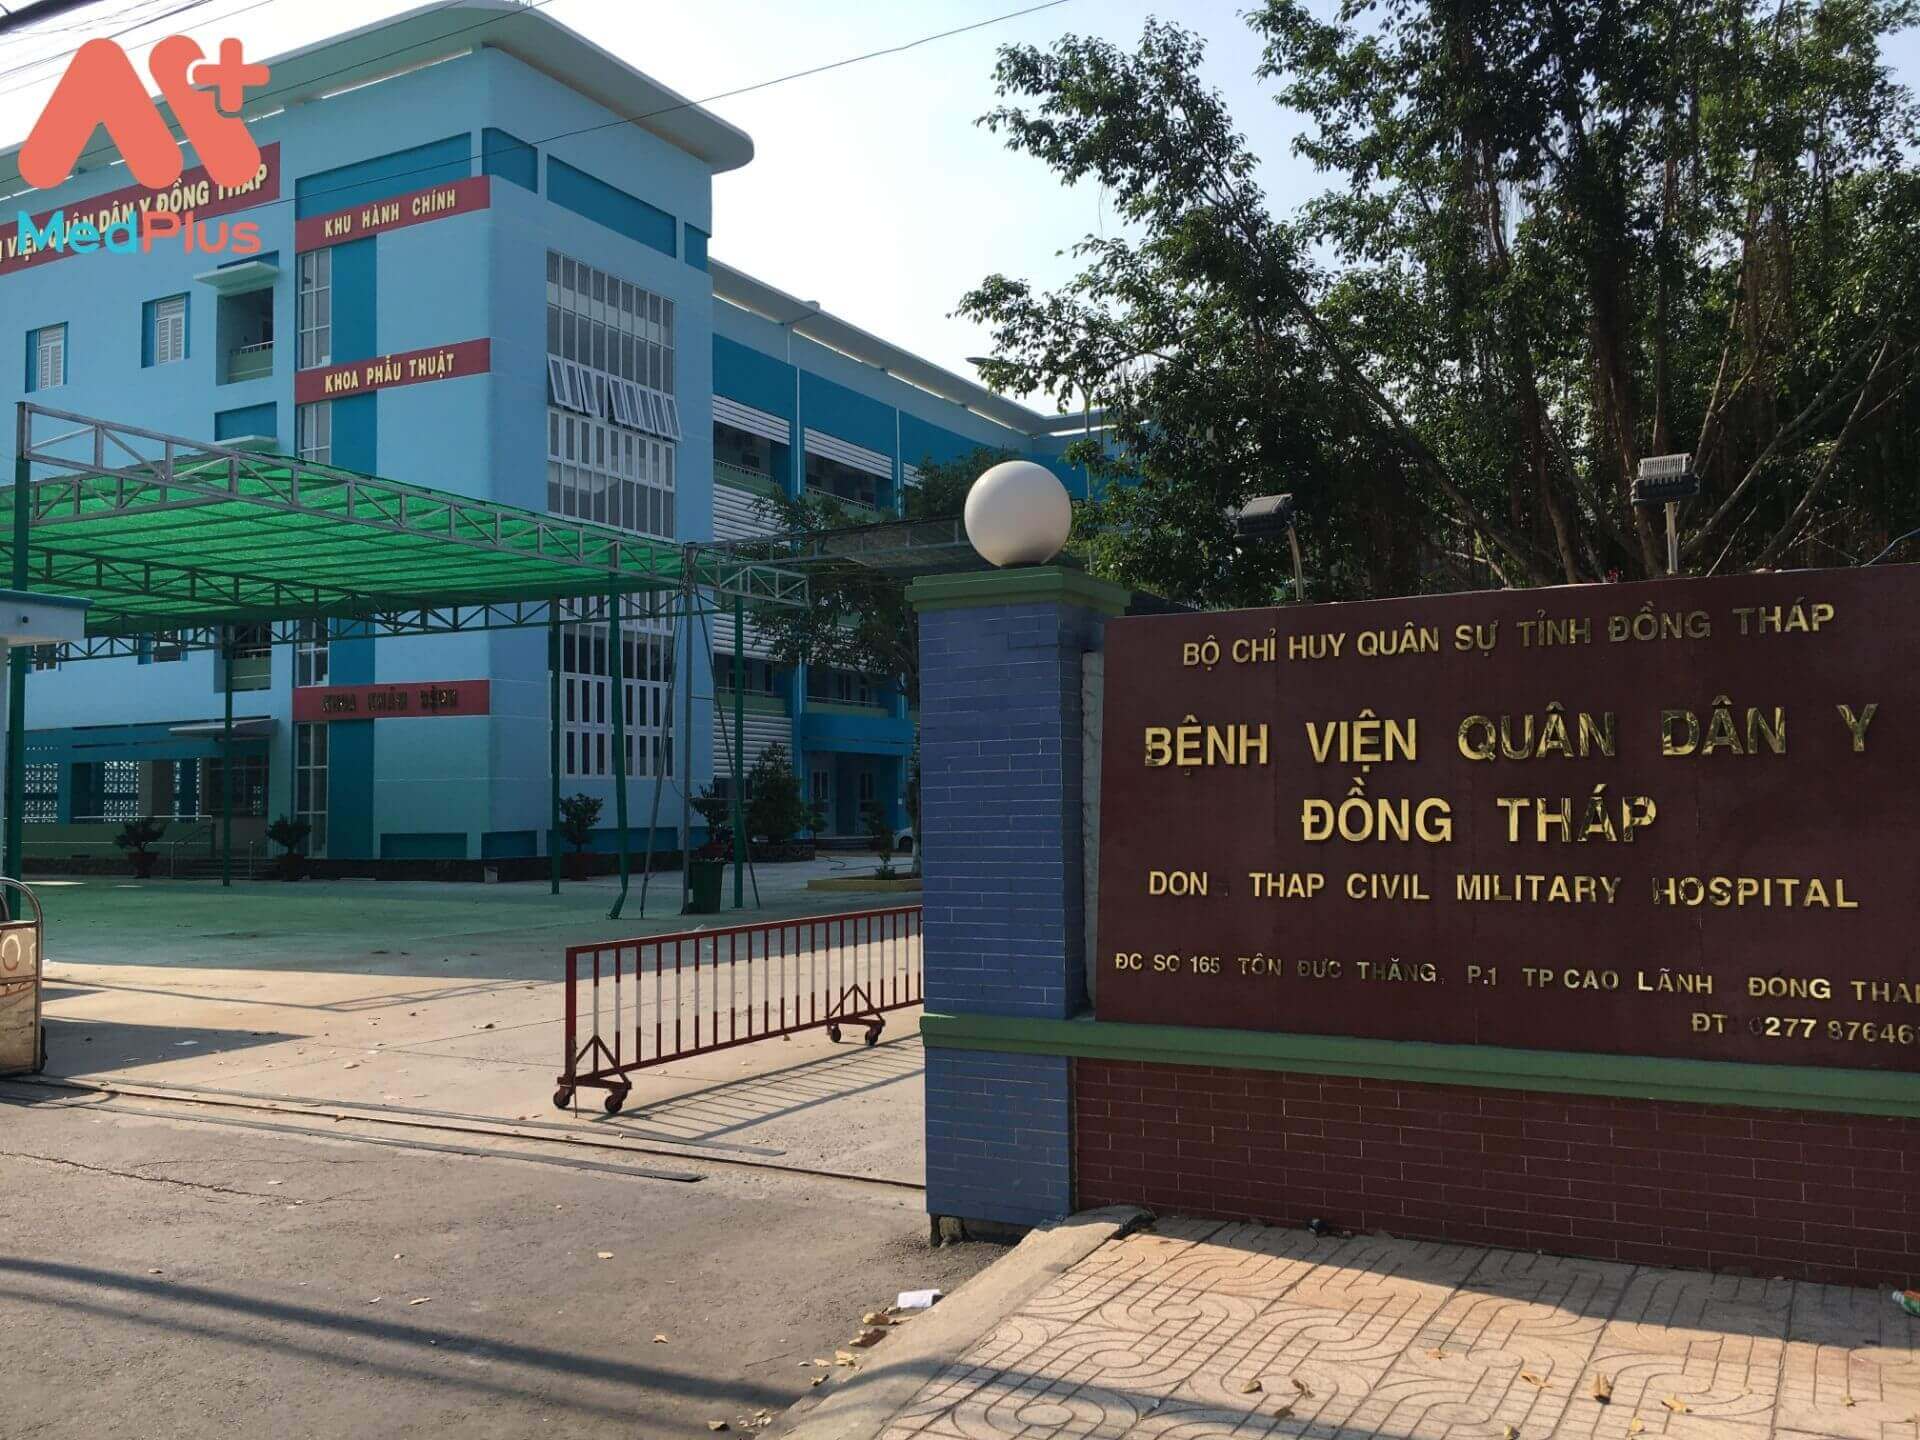 Bệnh viện quân dân y tỉnh Đồng Tháp